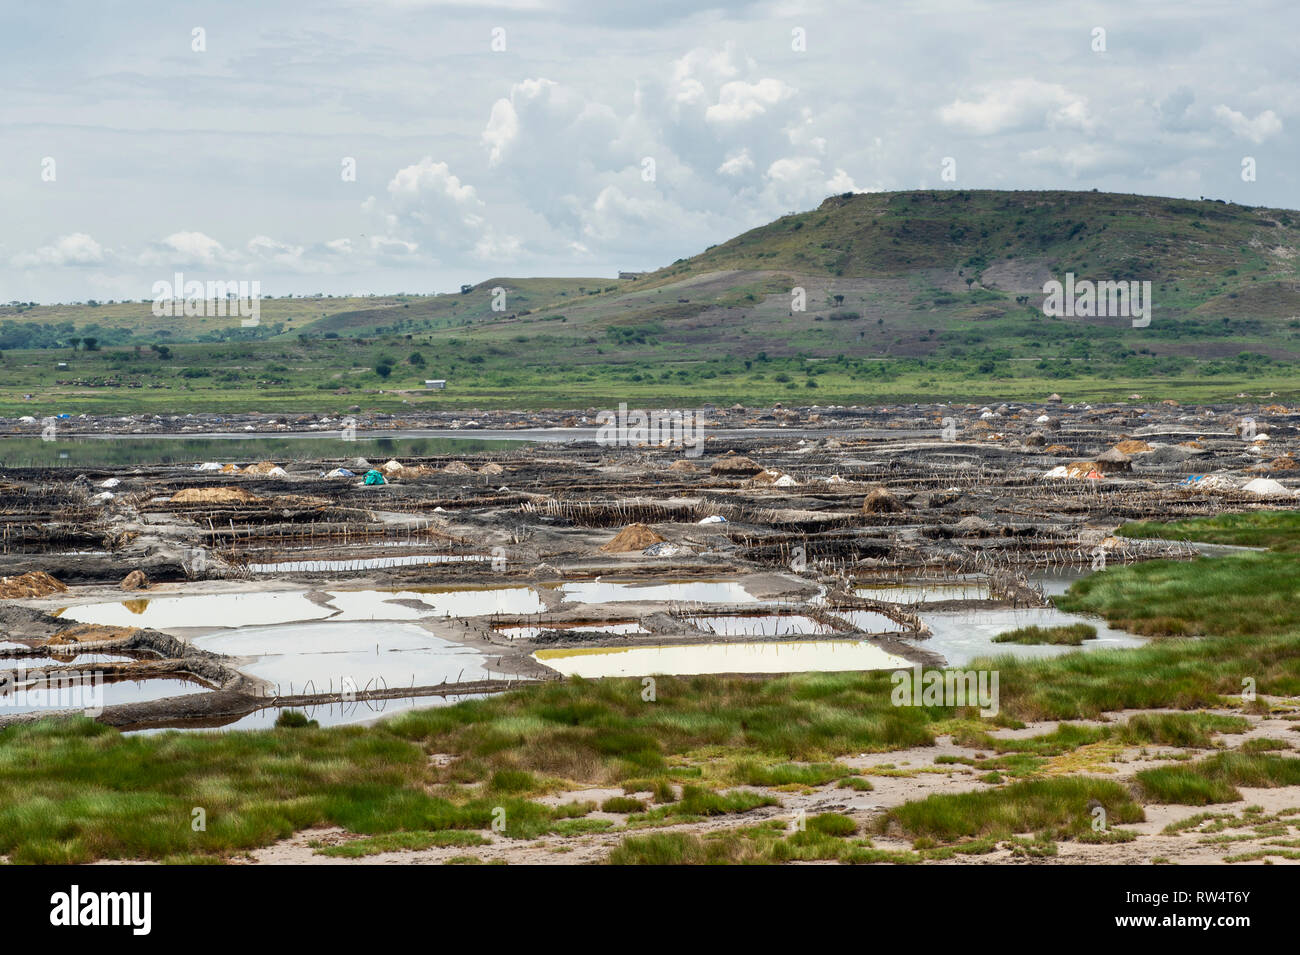 Salt mining at Katwe Crater Lake, Queen Elizabeth NP, Uganda Stock Photo